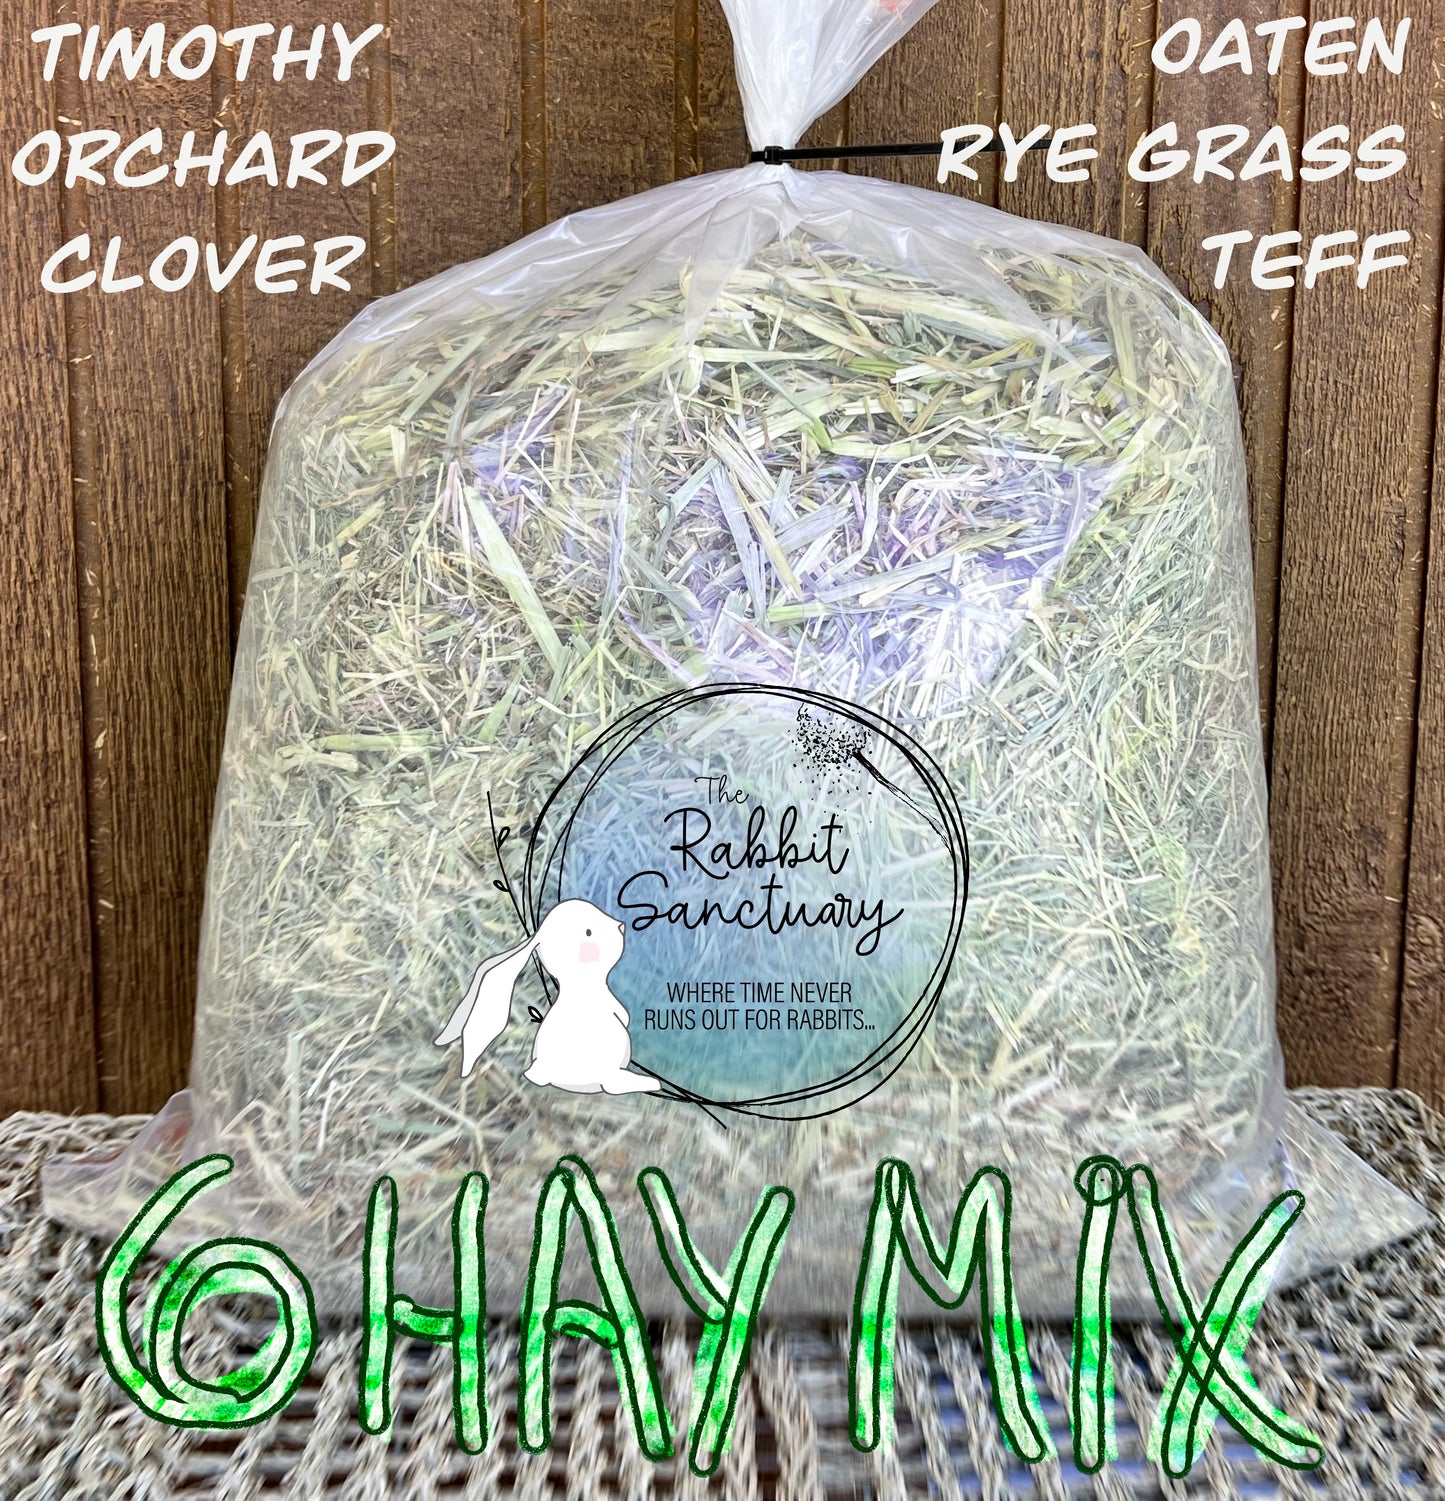 6 Hay Mix